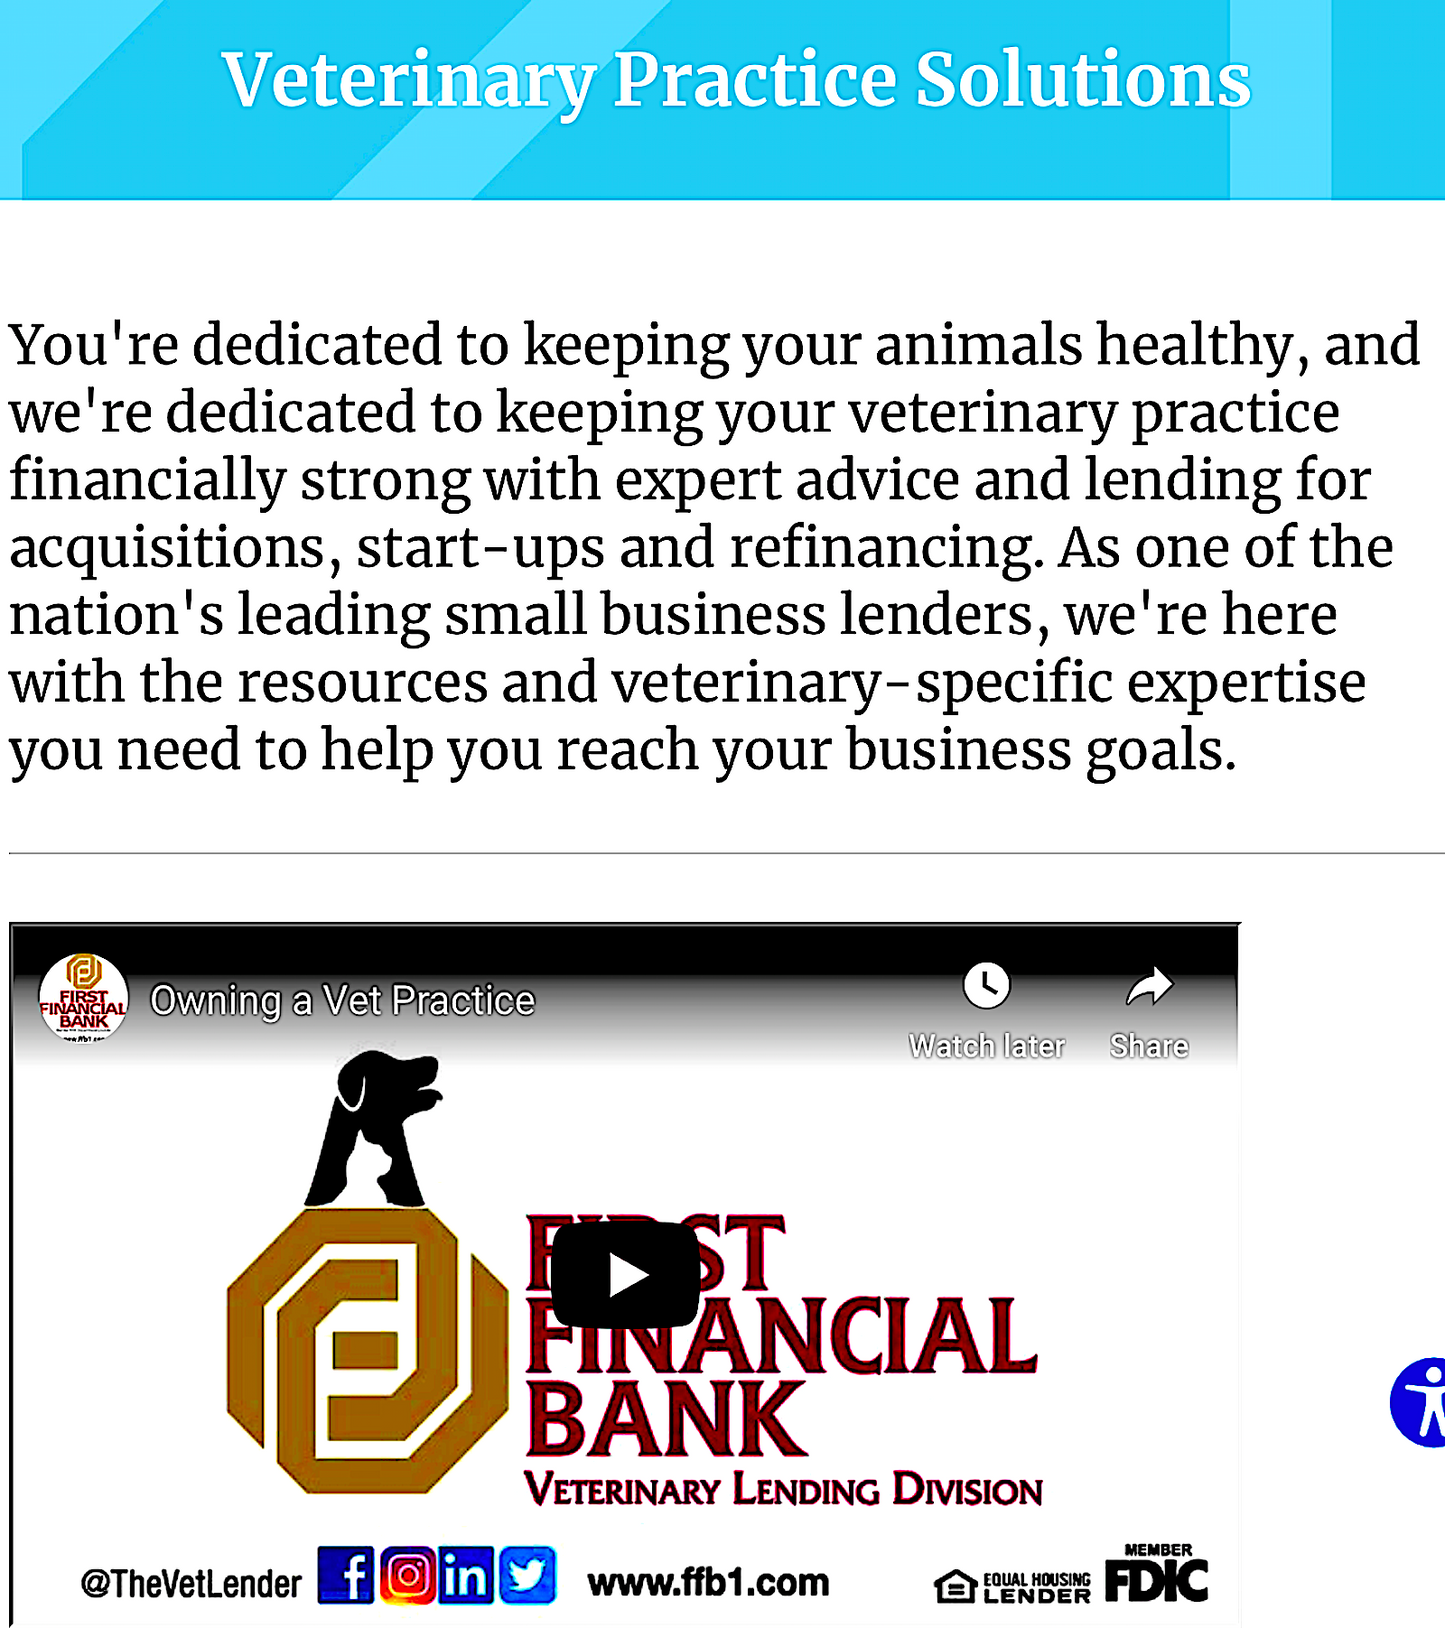 FIRST FINANCIAL BANK: helping veterinarians meet their business needs - Vital Vet